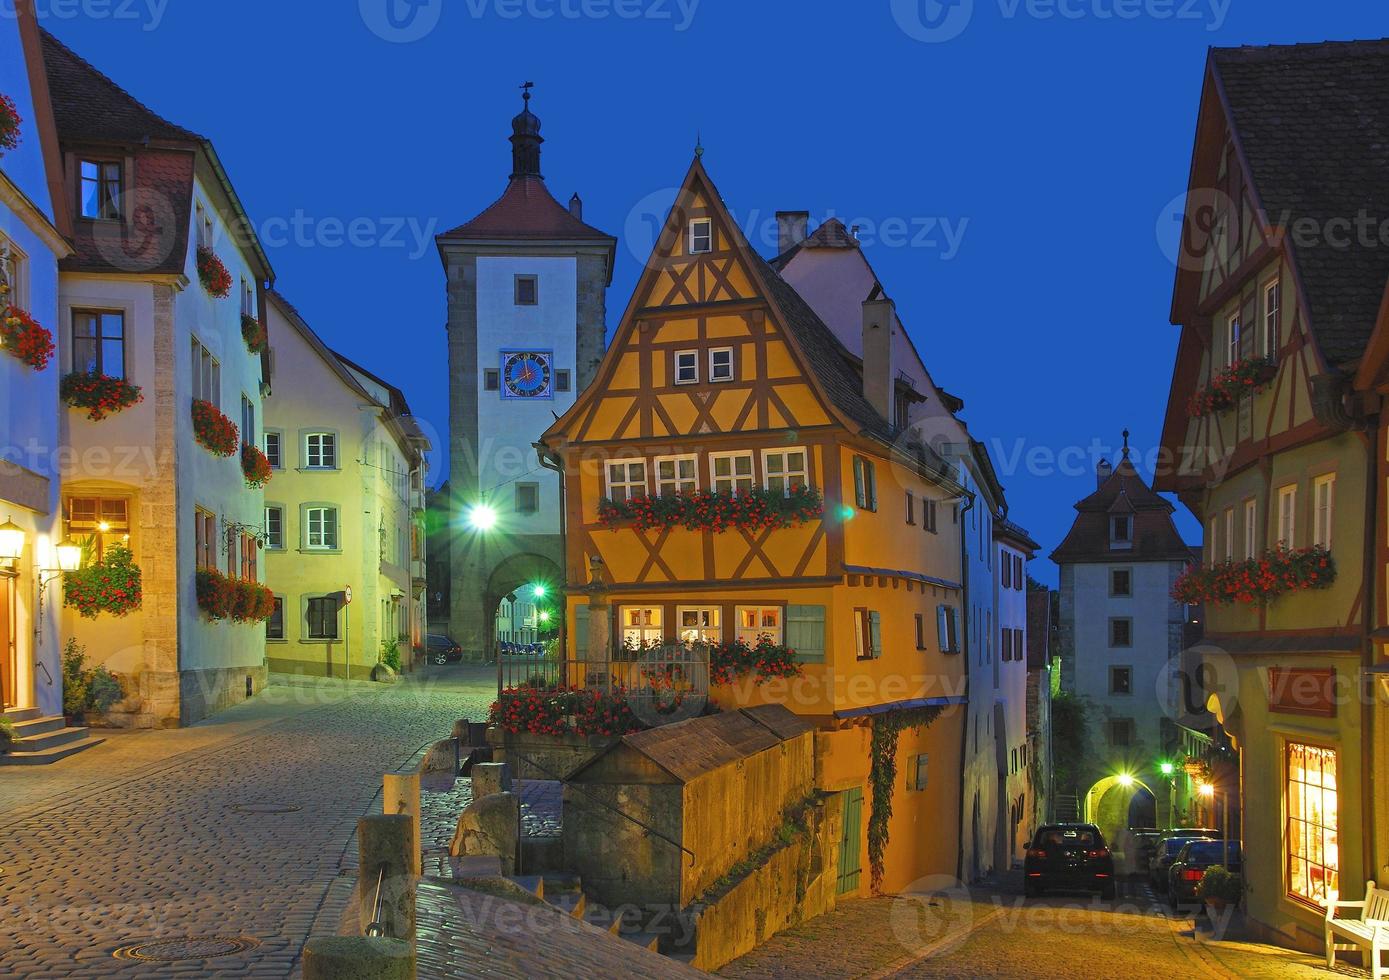 das berühmt historisch Plönlein im Rothenburg ob der Tauber , Bayern, Deutschland foto